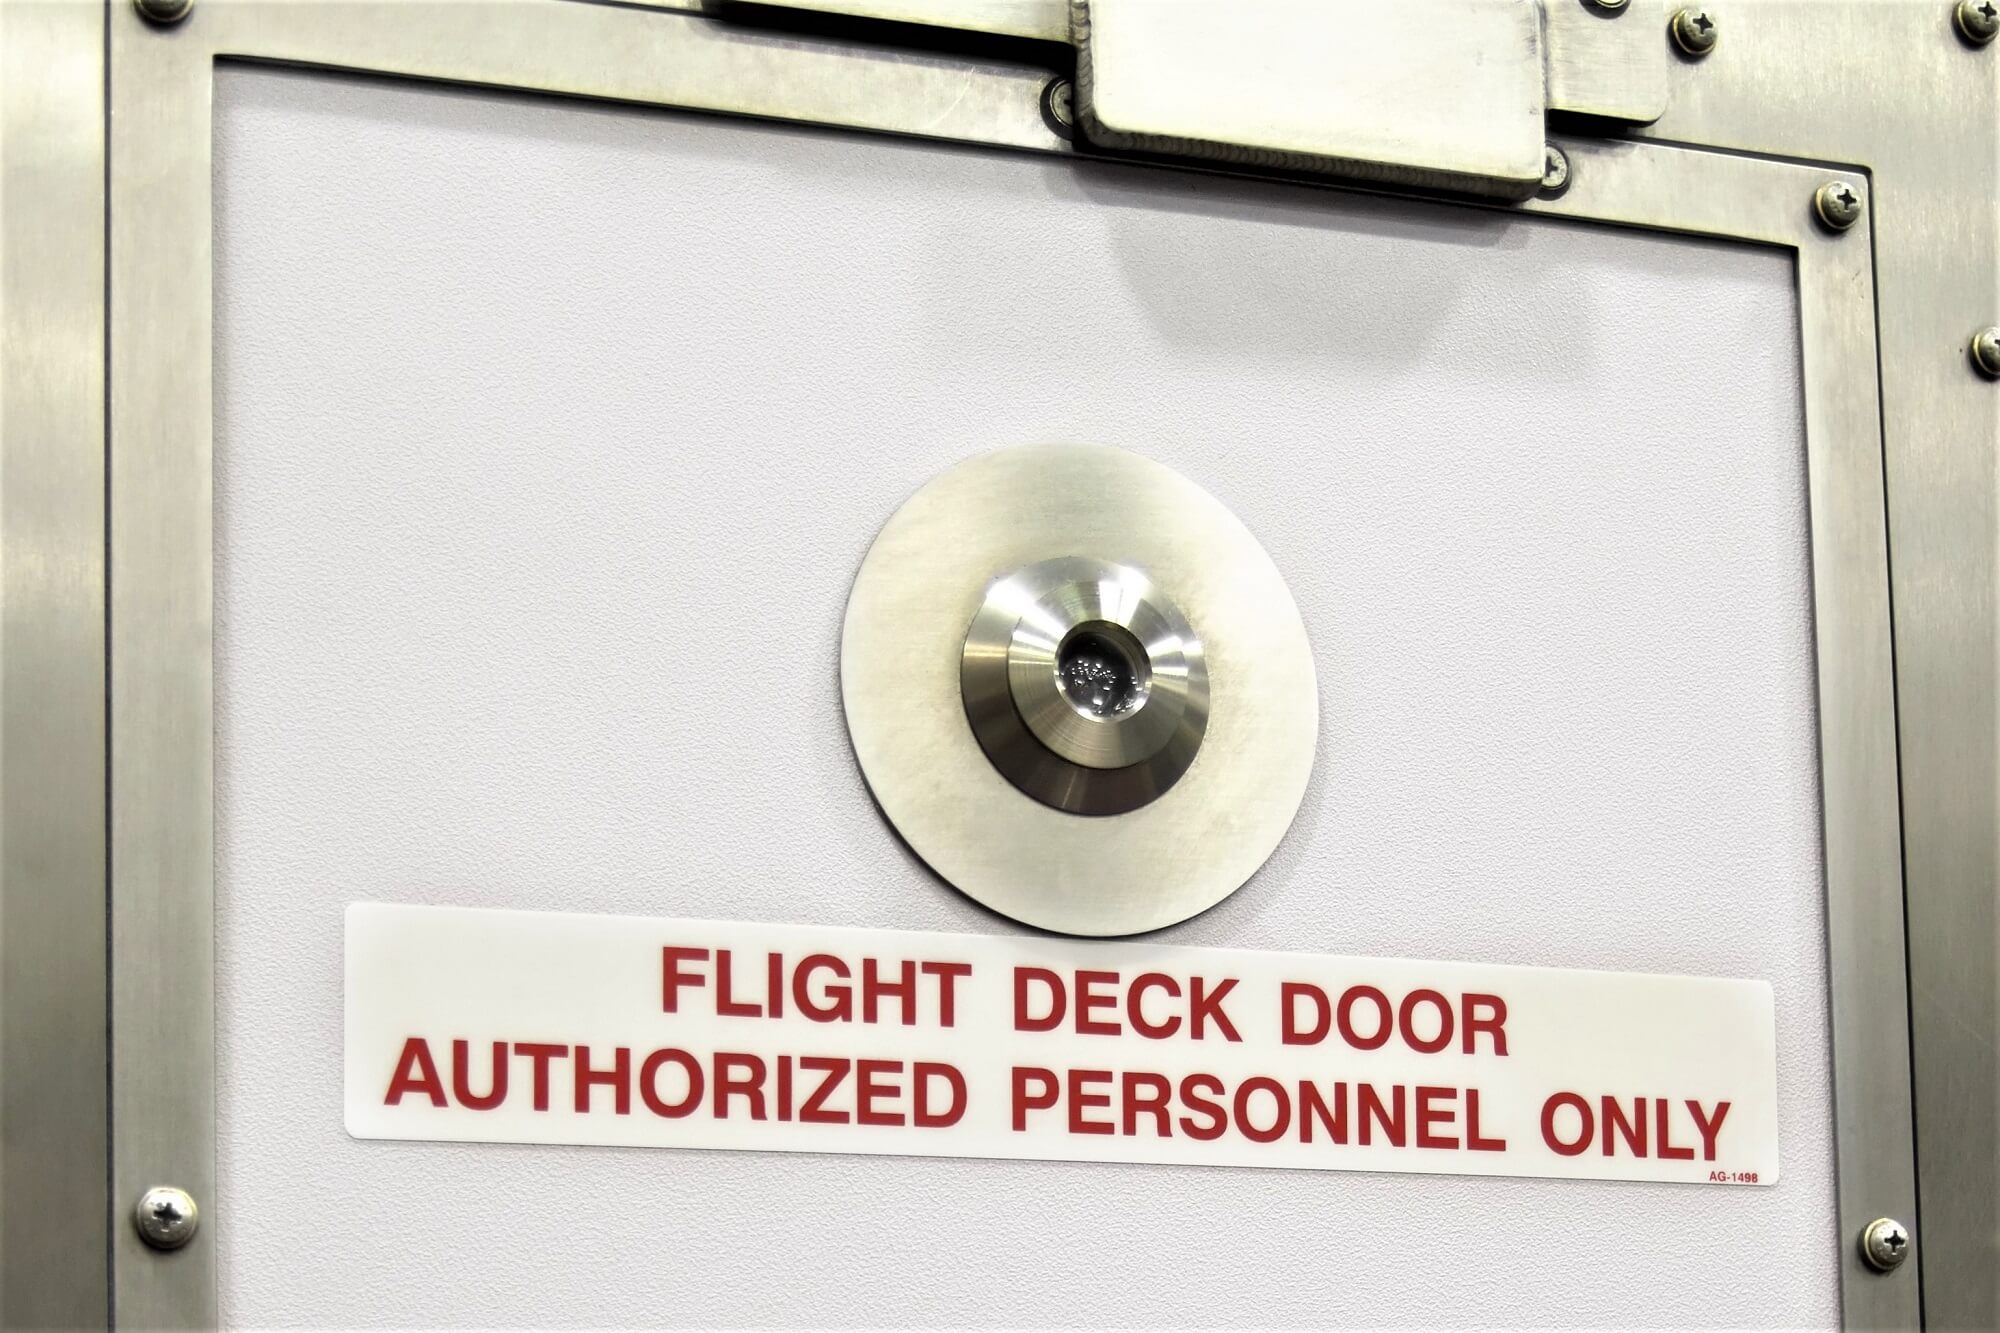 Flightdeck door